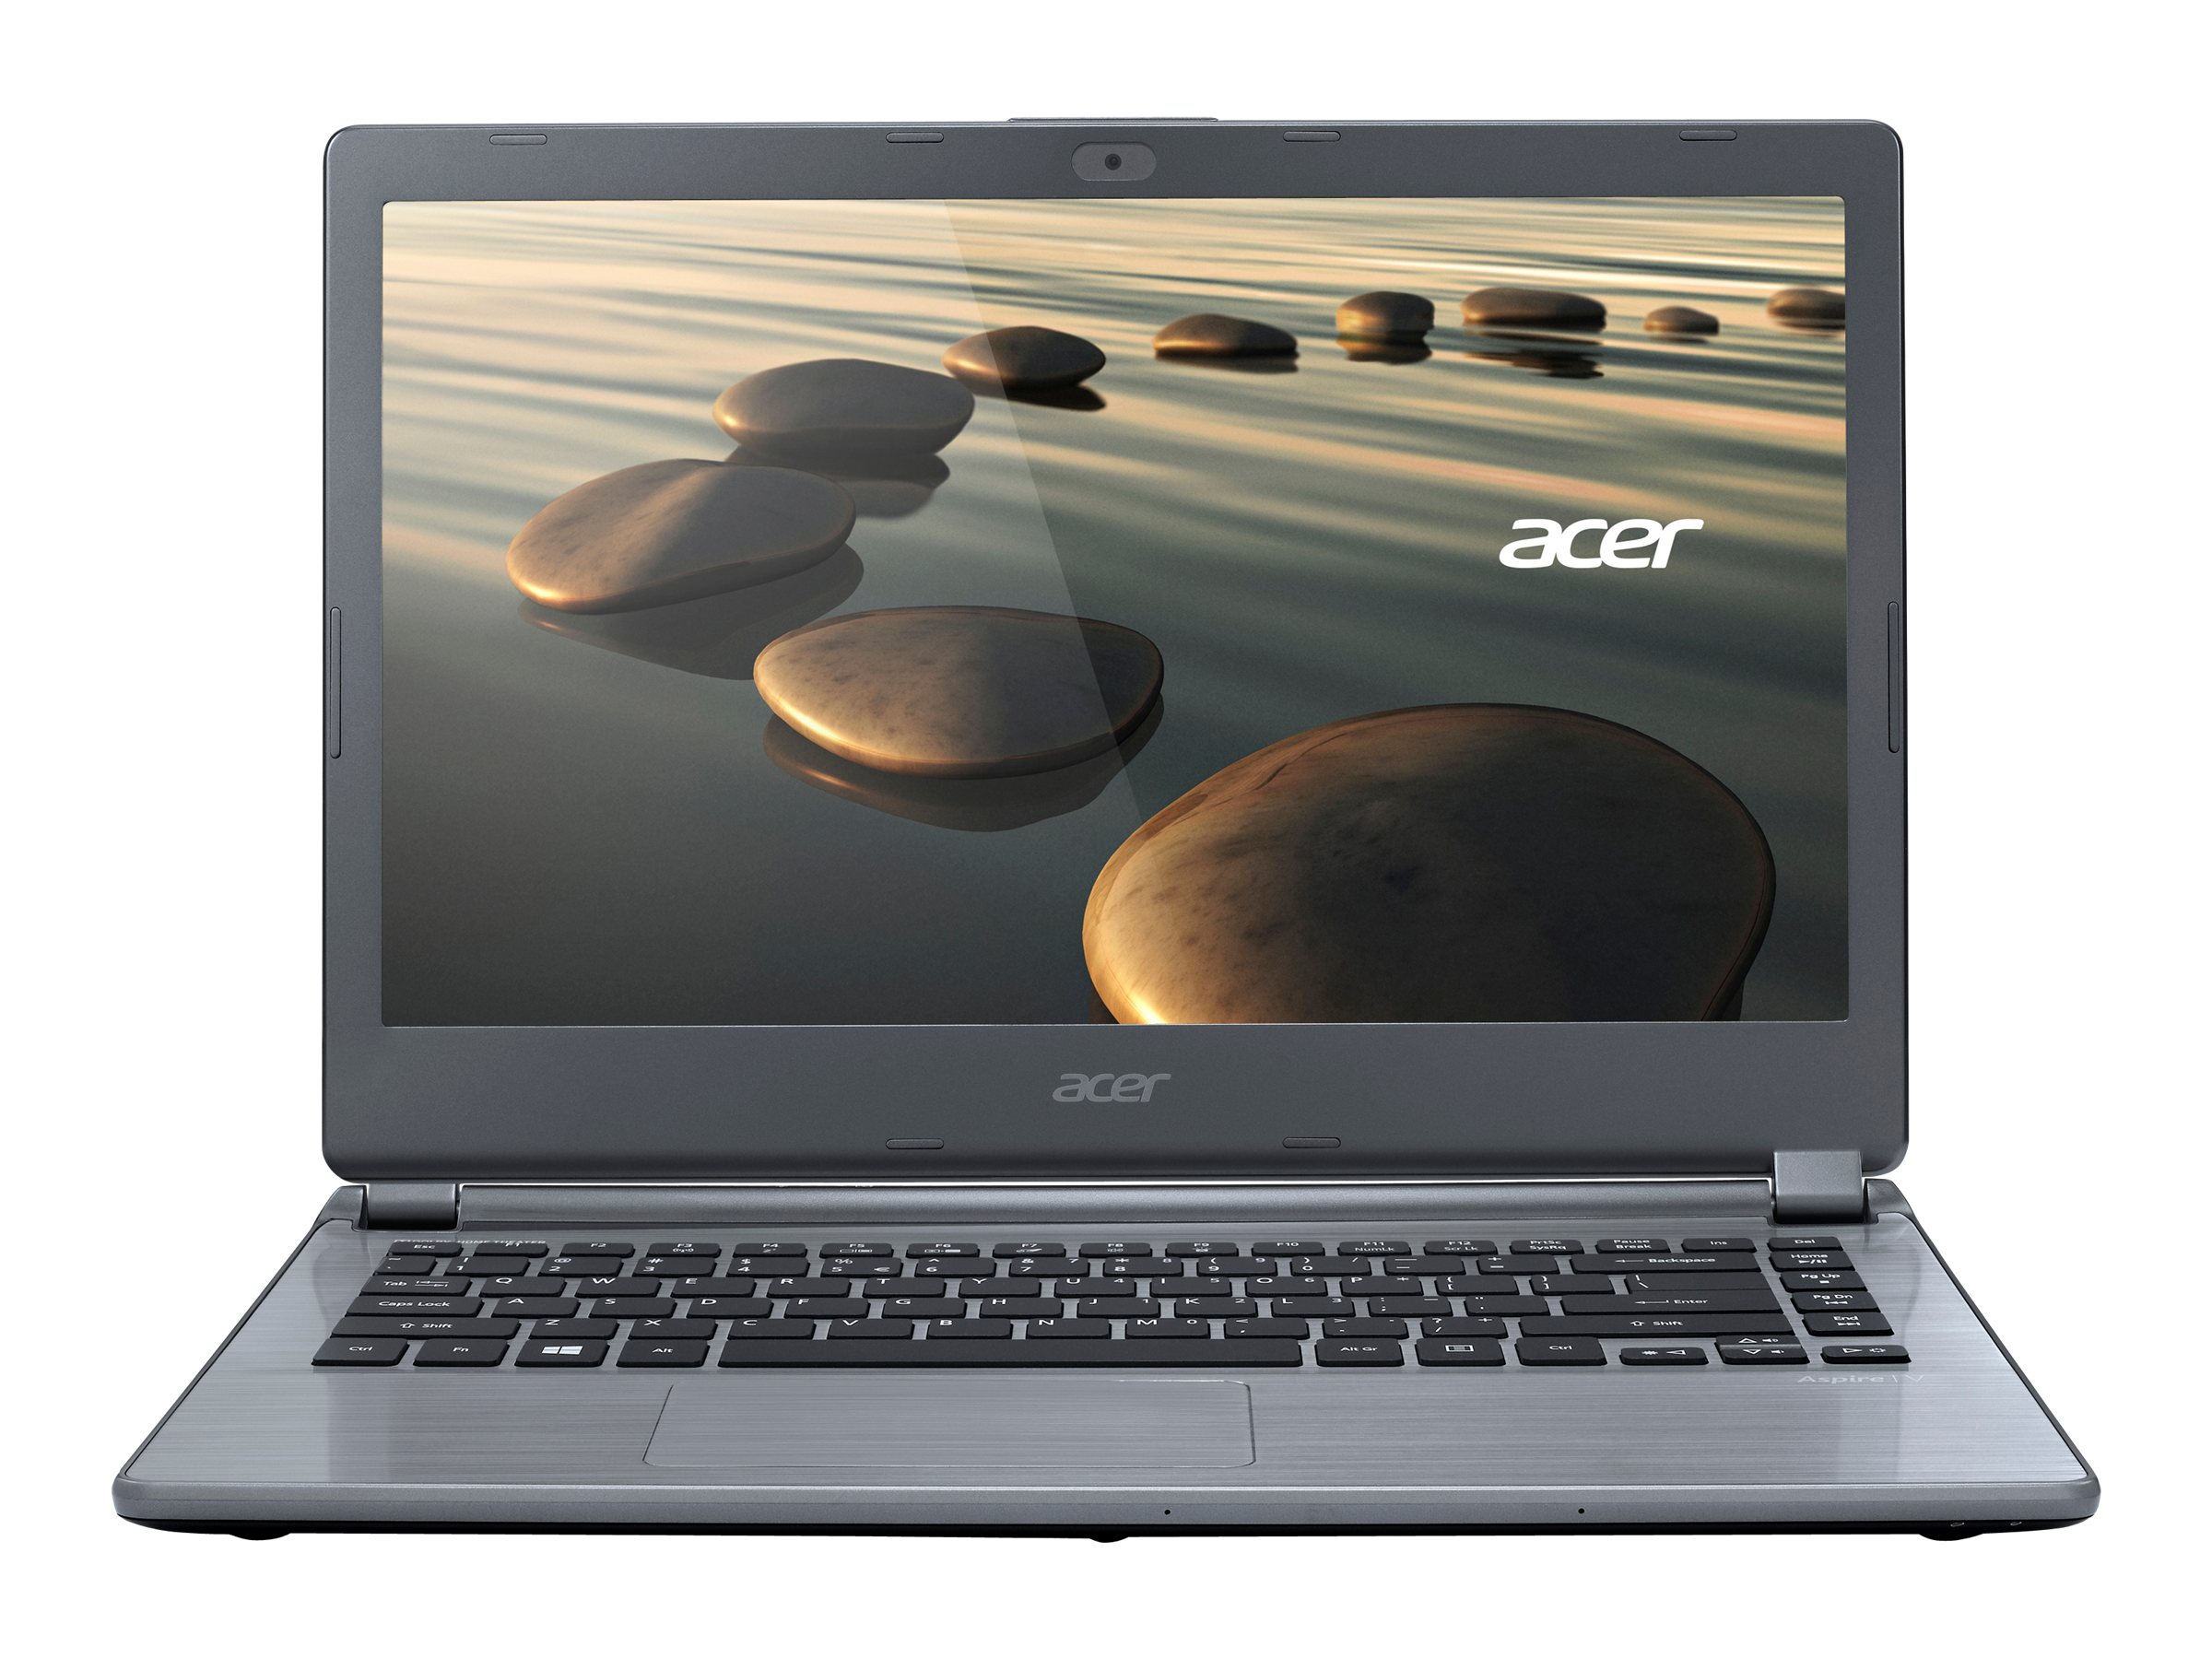 Acer Aspire V7 (481P)